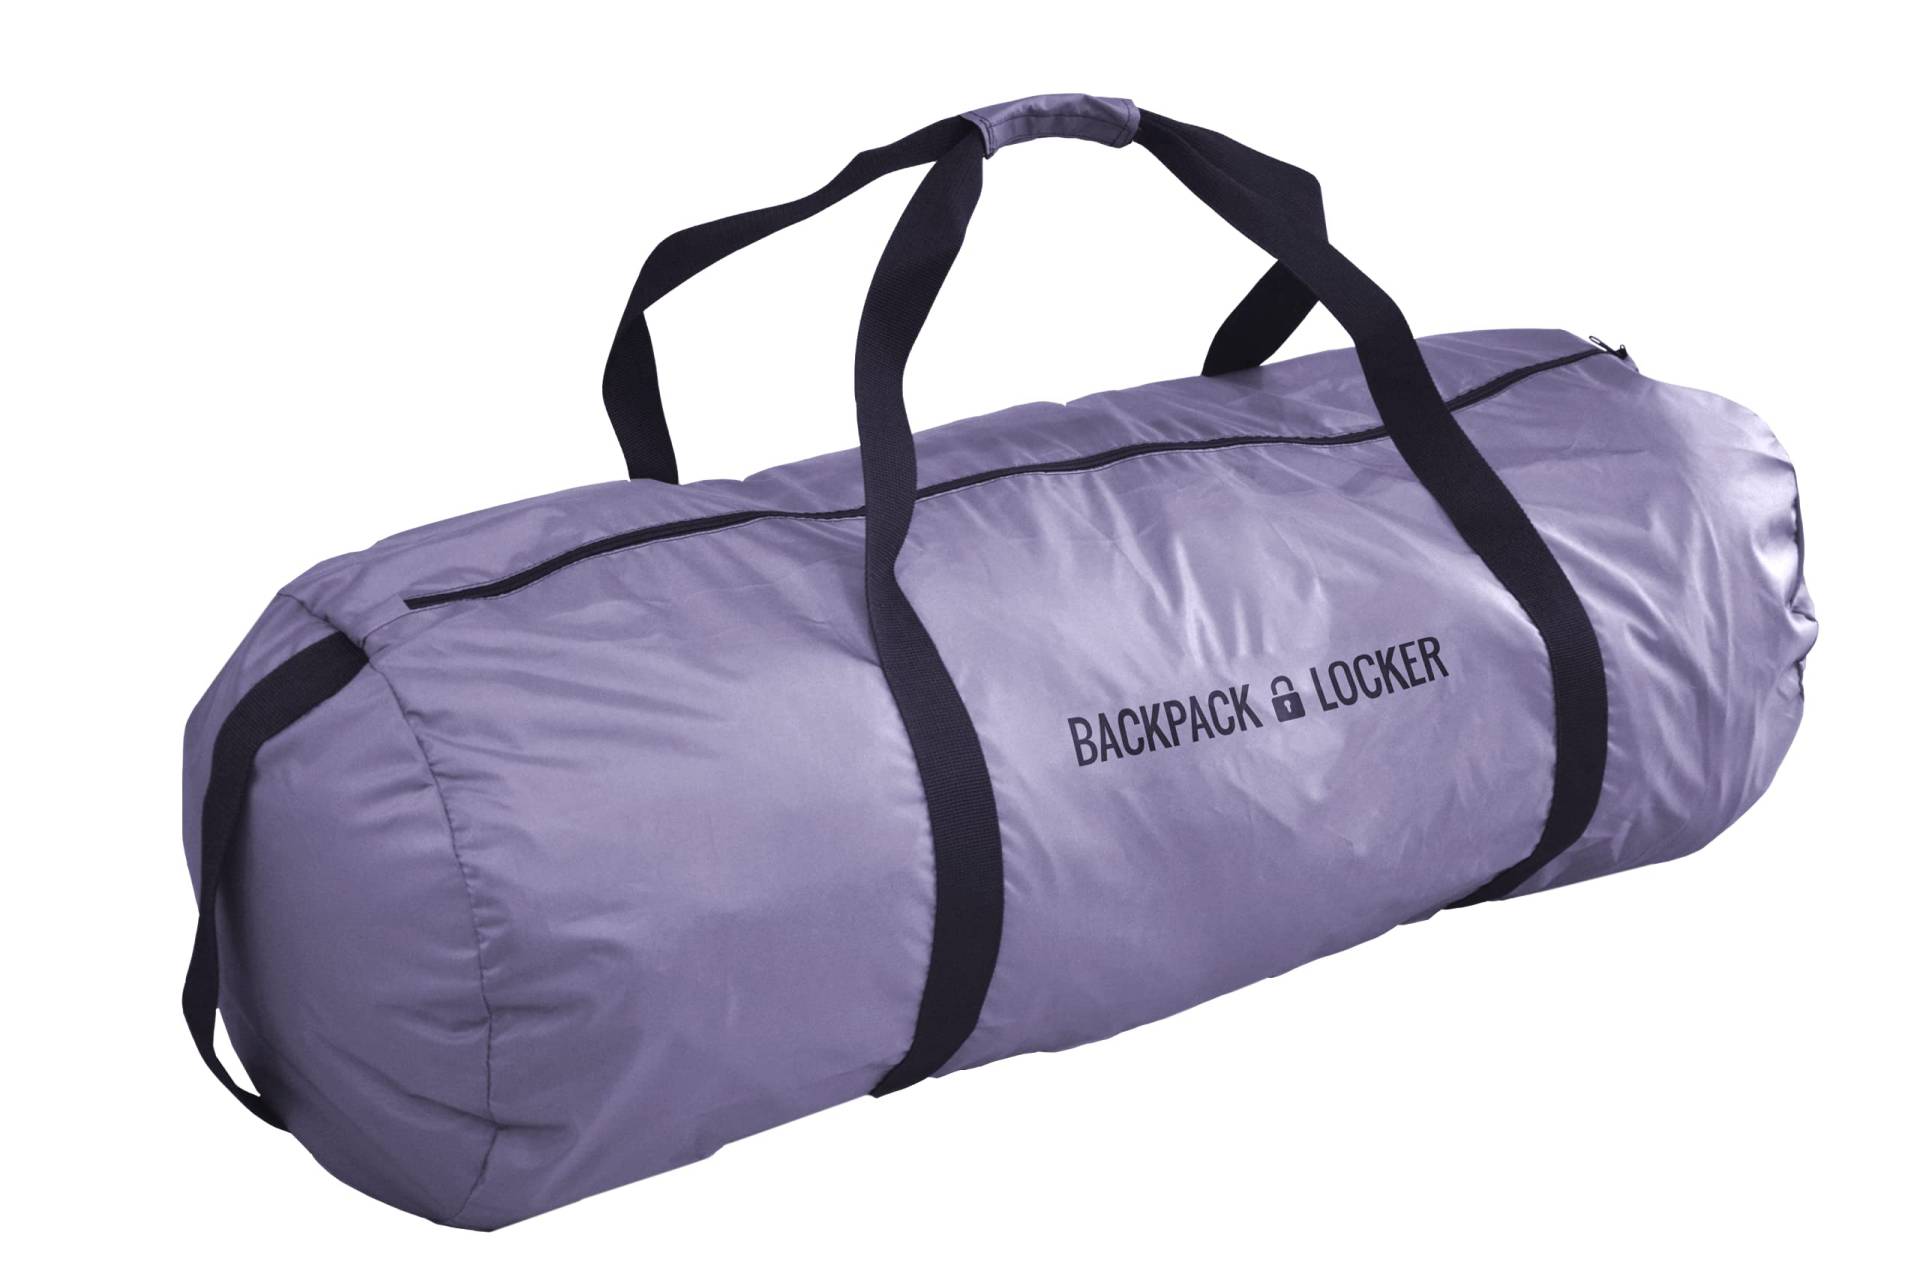 Backpack Locker - Dachbox Tasche - Große Schultertasche (Grau, 65 Liter) von Backpack Locker